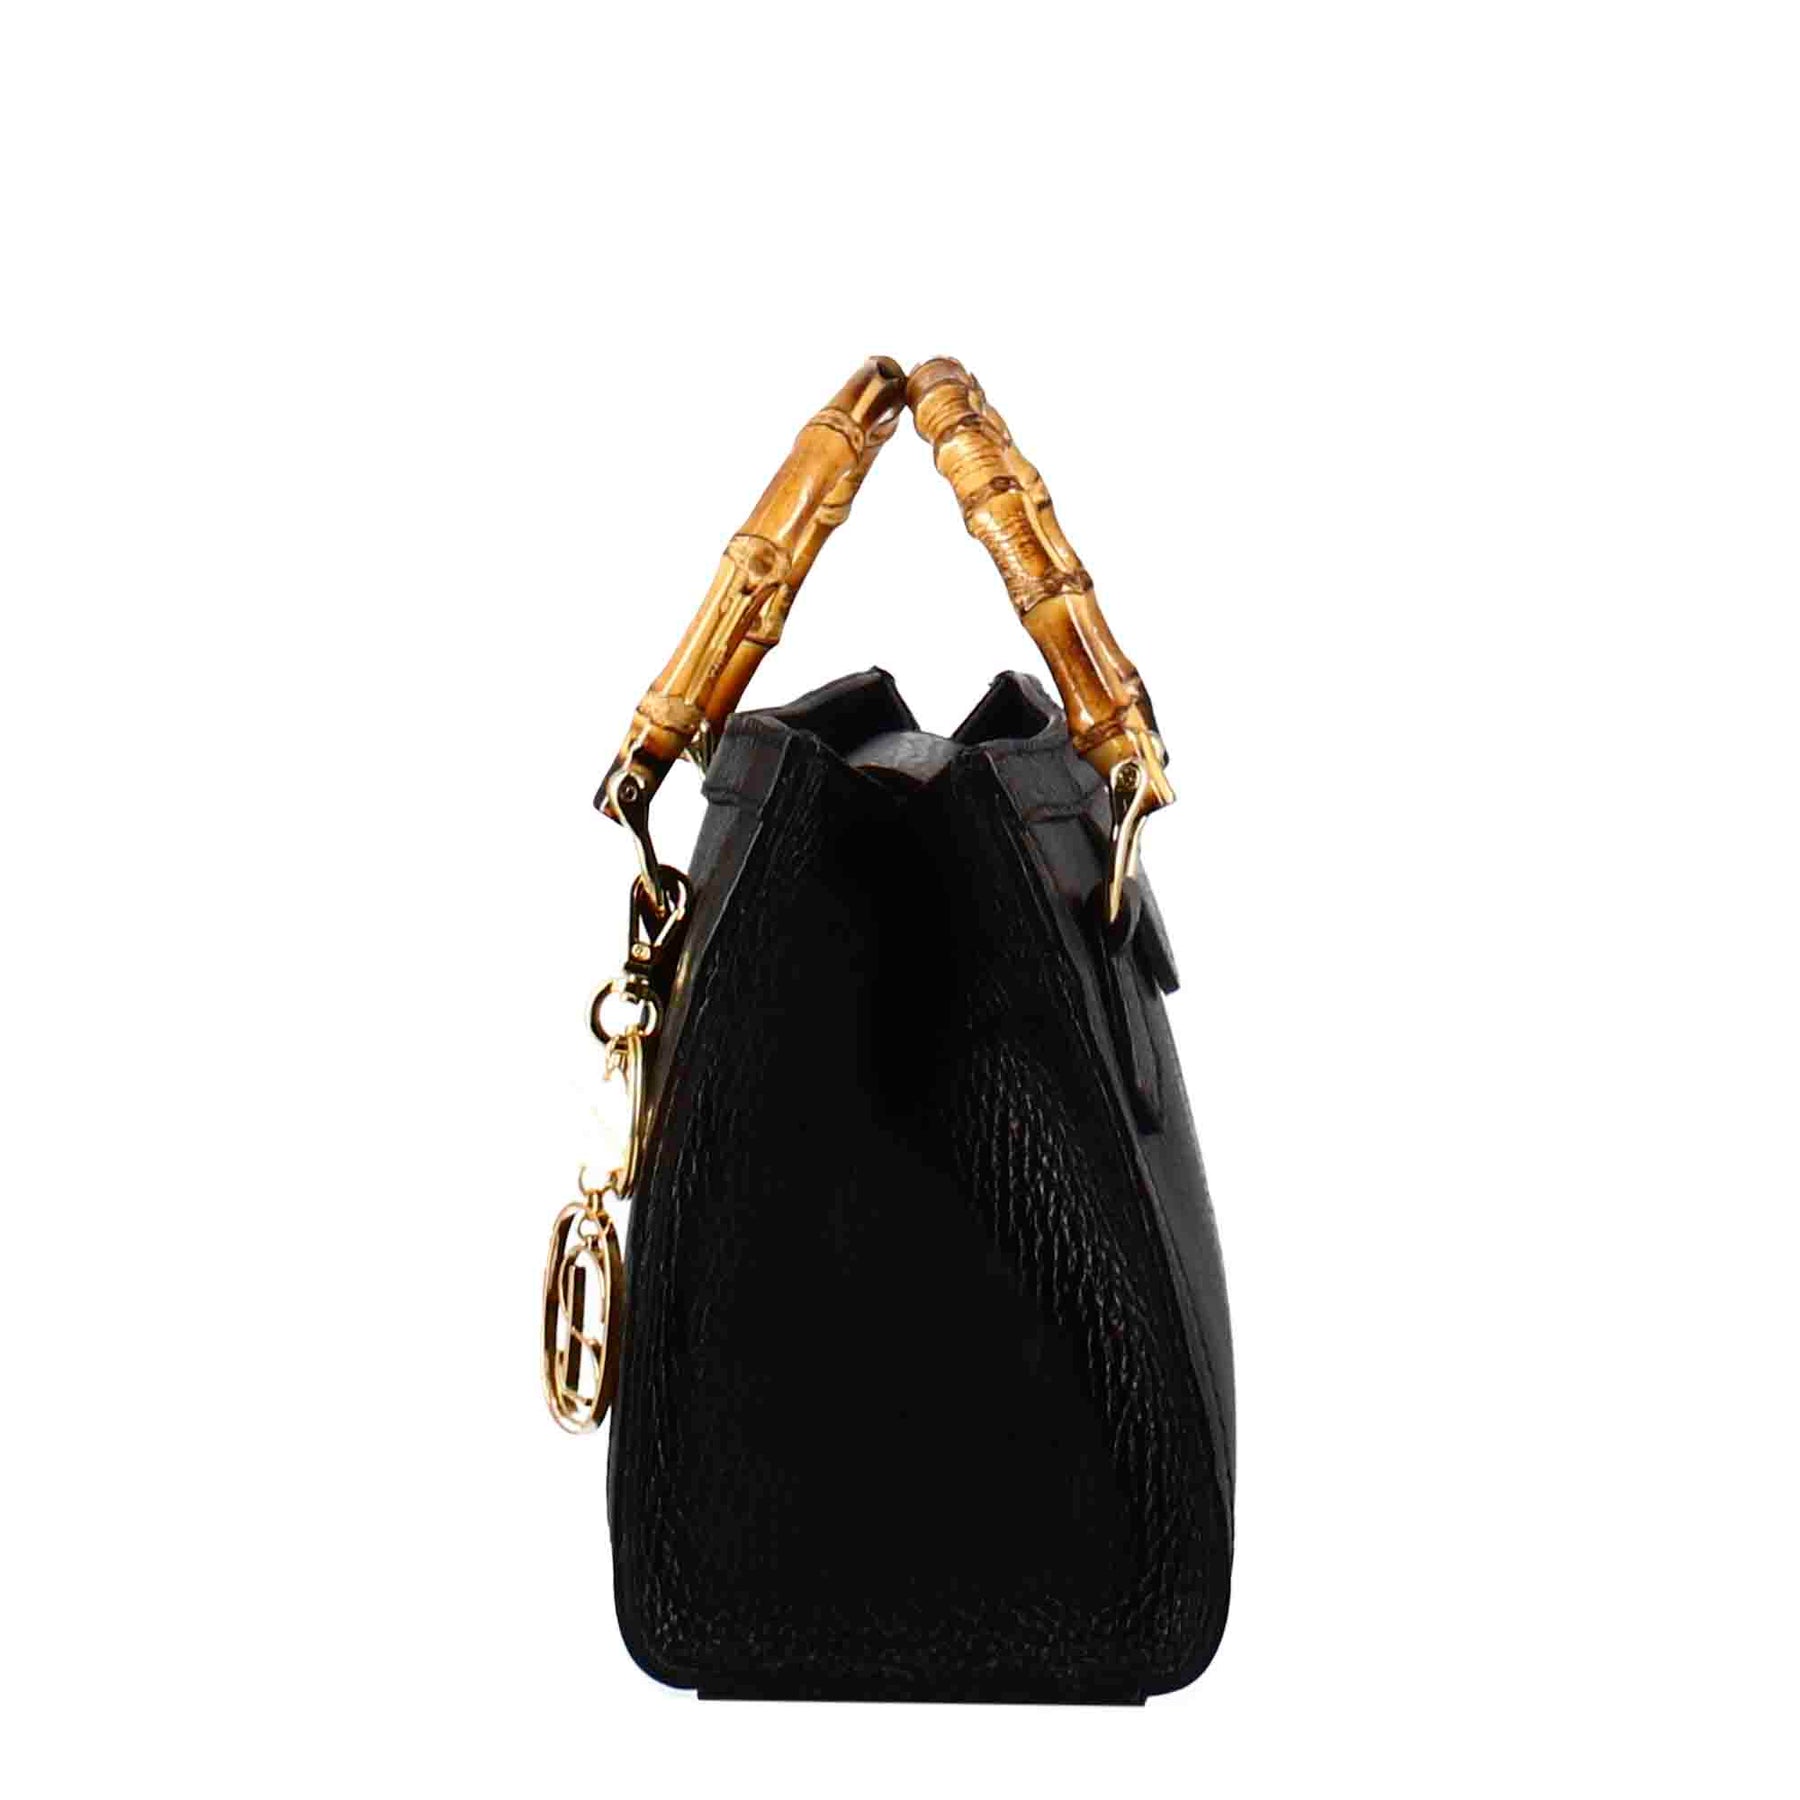 Mini sac à main Bamboo en cuir noir pour femmes avec poignées en bois et bandoulière